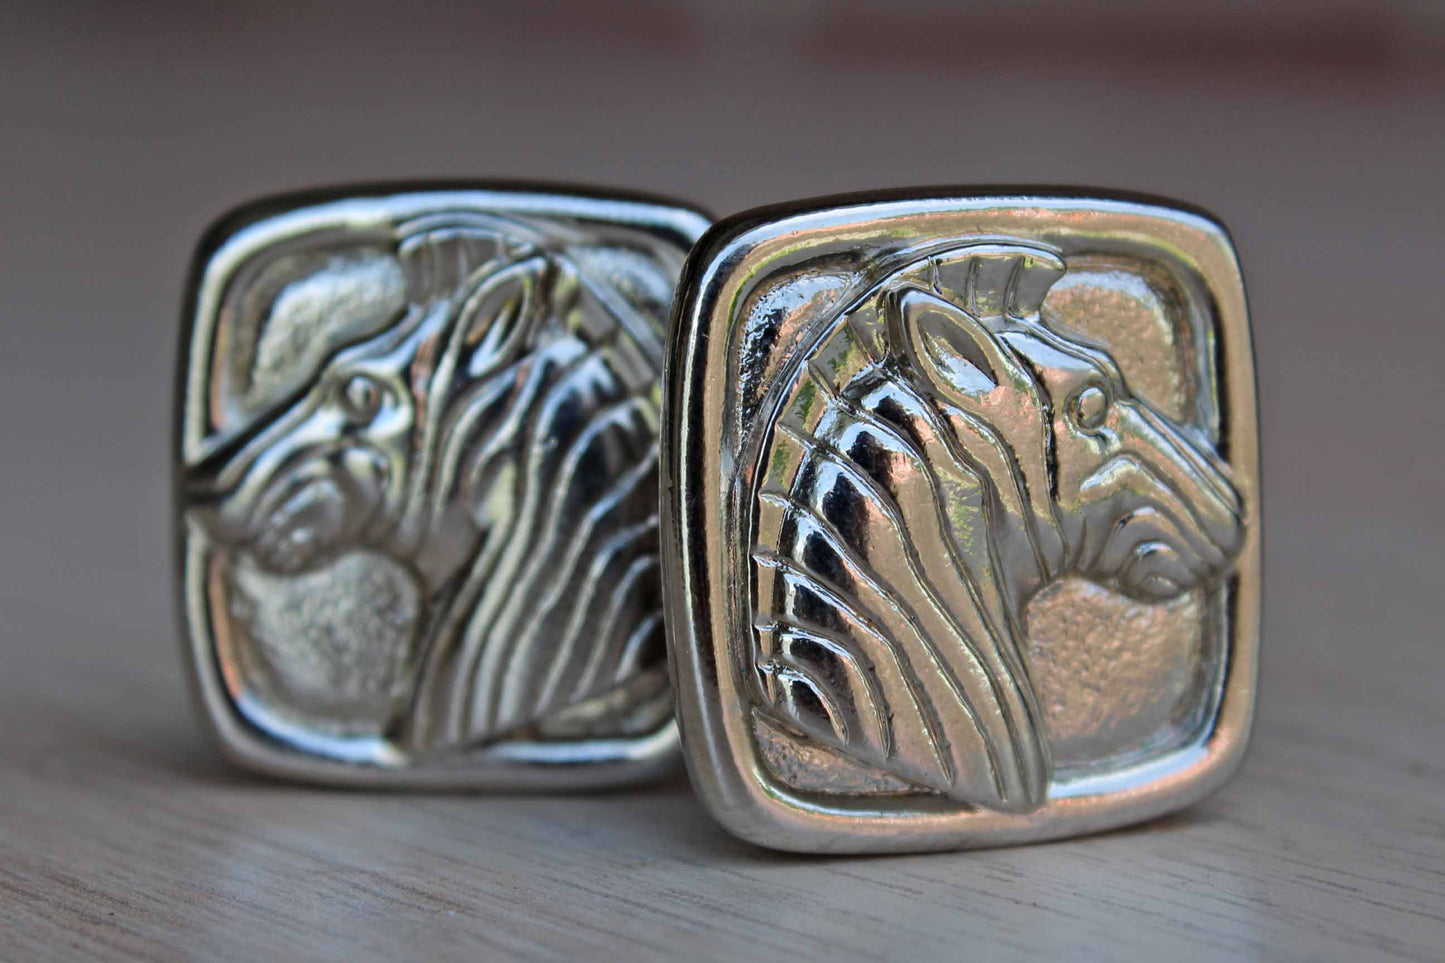 Bold Silver Tone Zebra Pierced Earrings